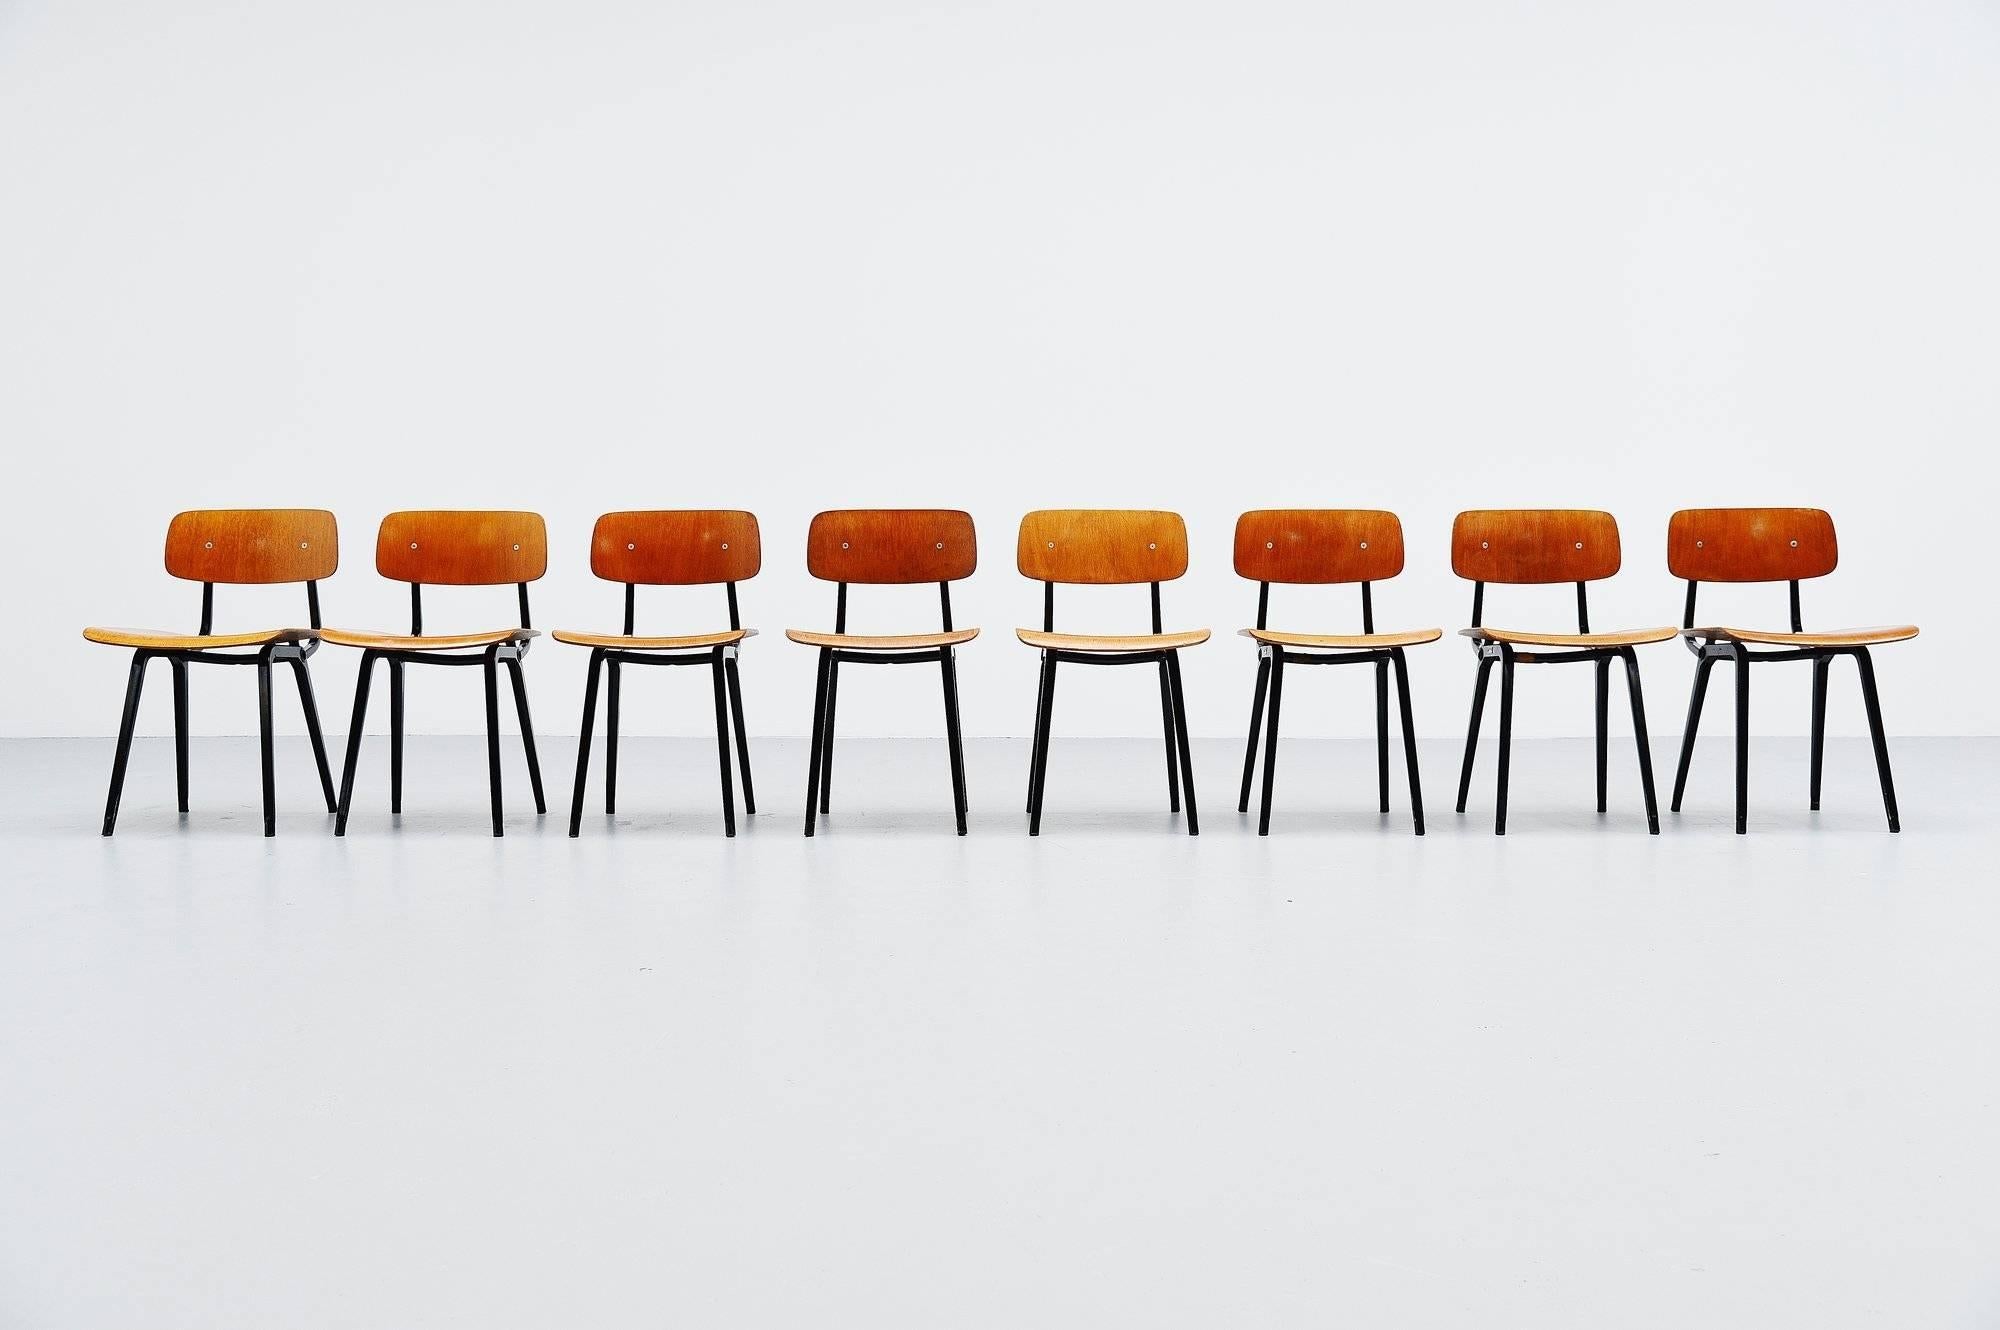 Superbe ensemble de huit chaises de salle à manger revolt conçues par Friso Kramer pour Ahrend de Cirkel, Hollande, 1953. Bien que la chaise Revolt ait été conçue dès 1953, sa production a débuté en 1958. Ces chaises sont rares car elles n'ont été